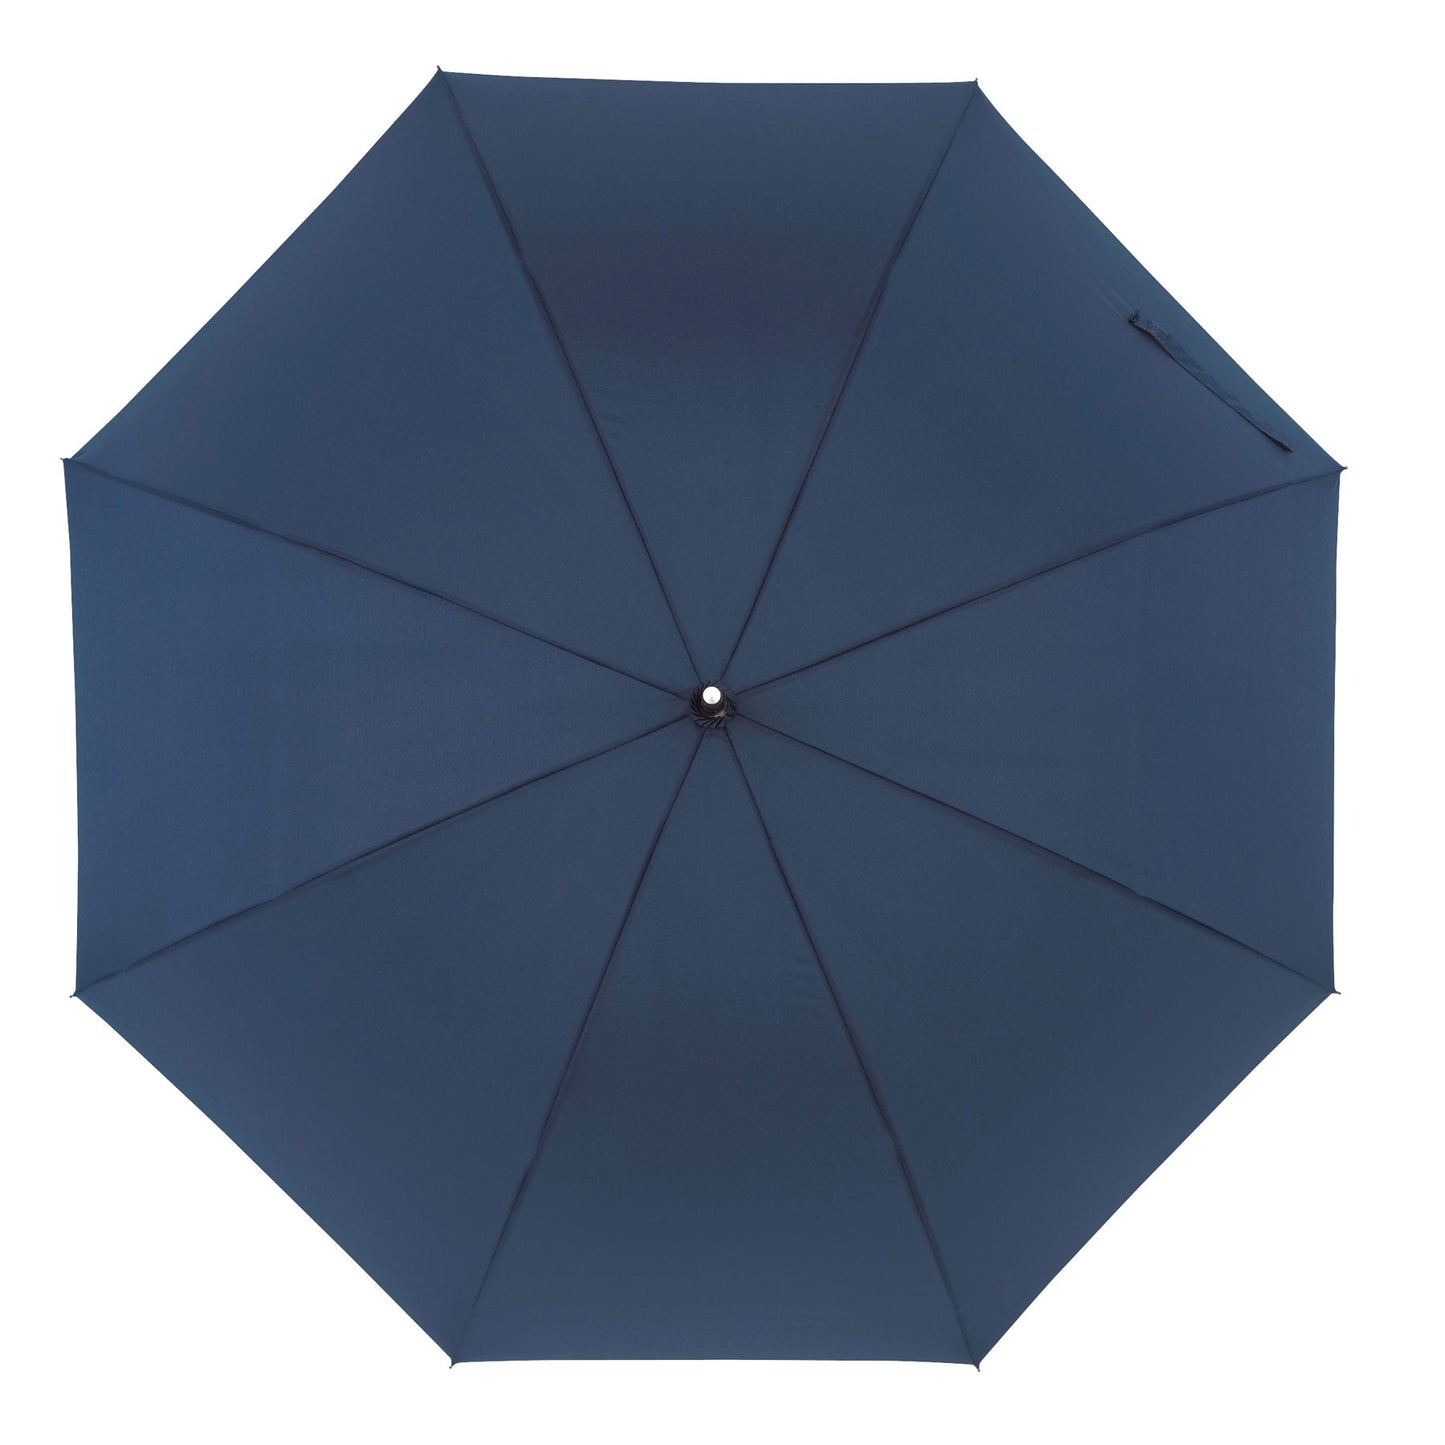 Μπλε μαρίν ομπρέλα βροχής, συνοδείας, μακριά, αντιανεμική.